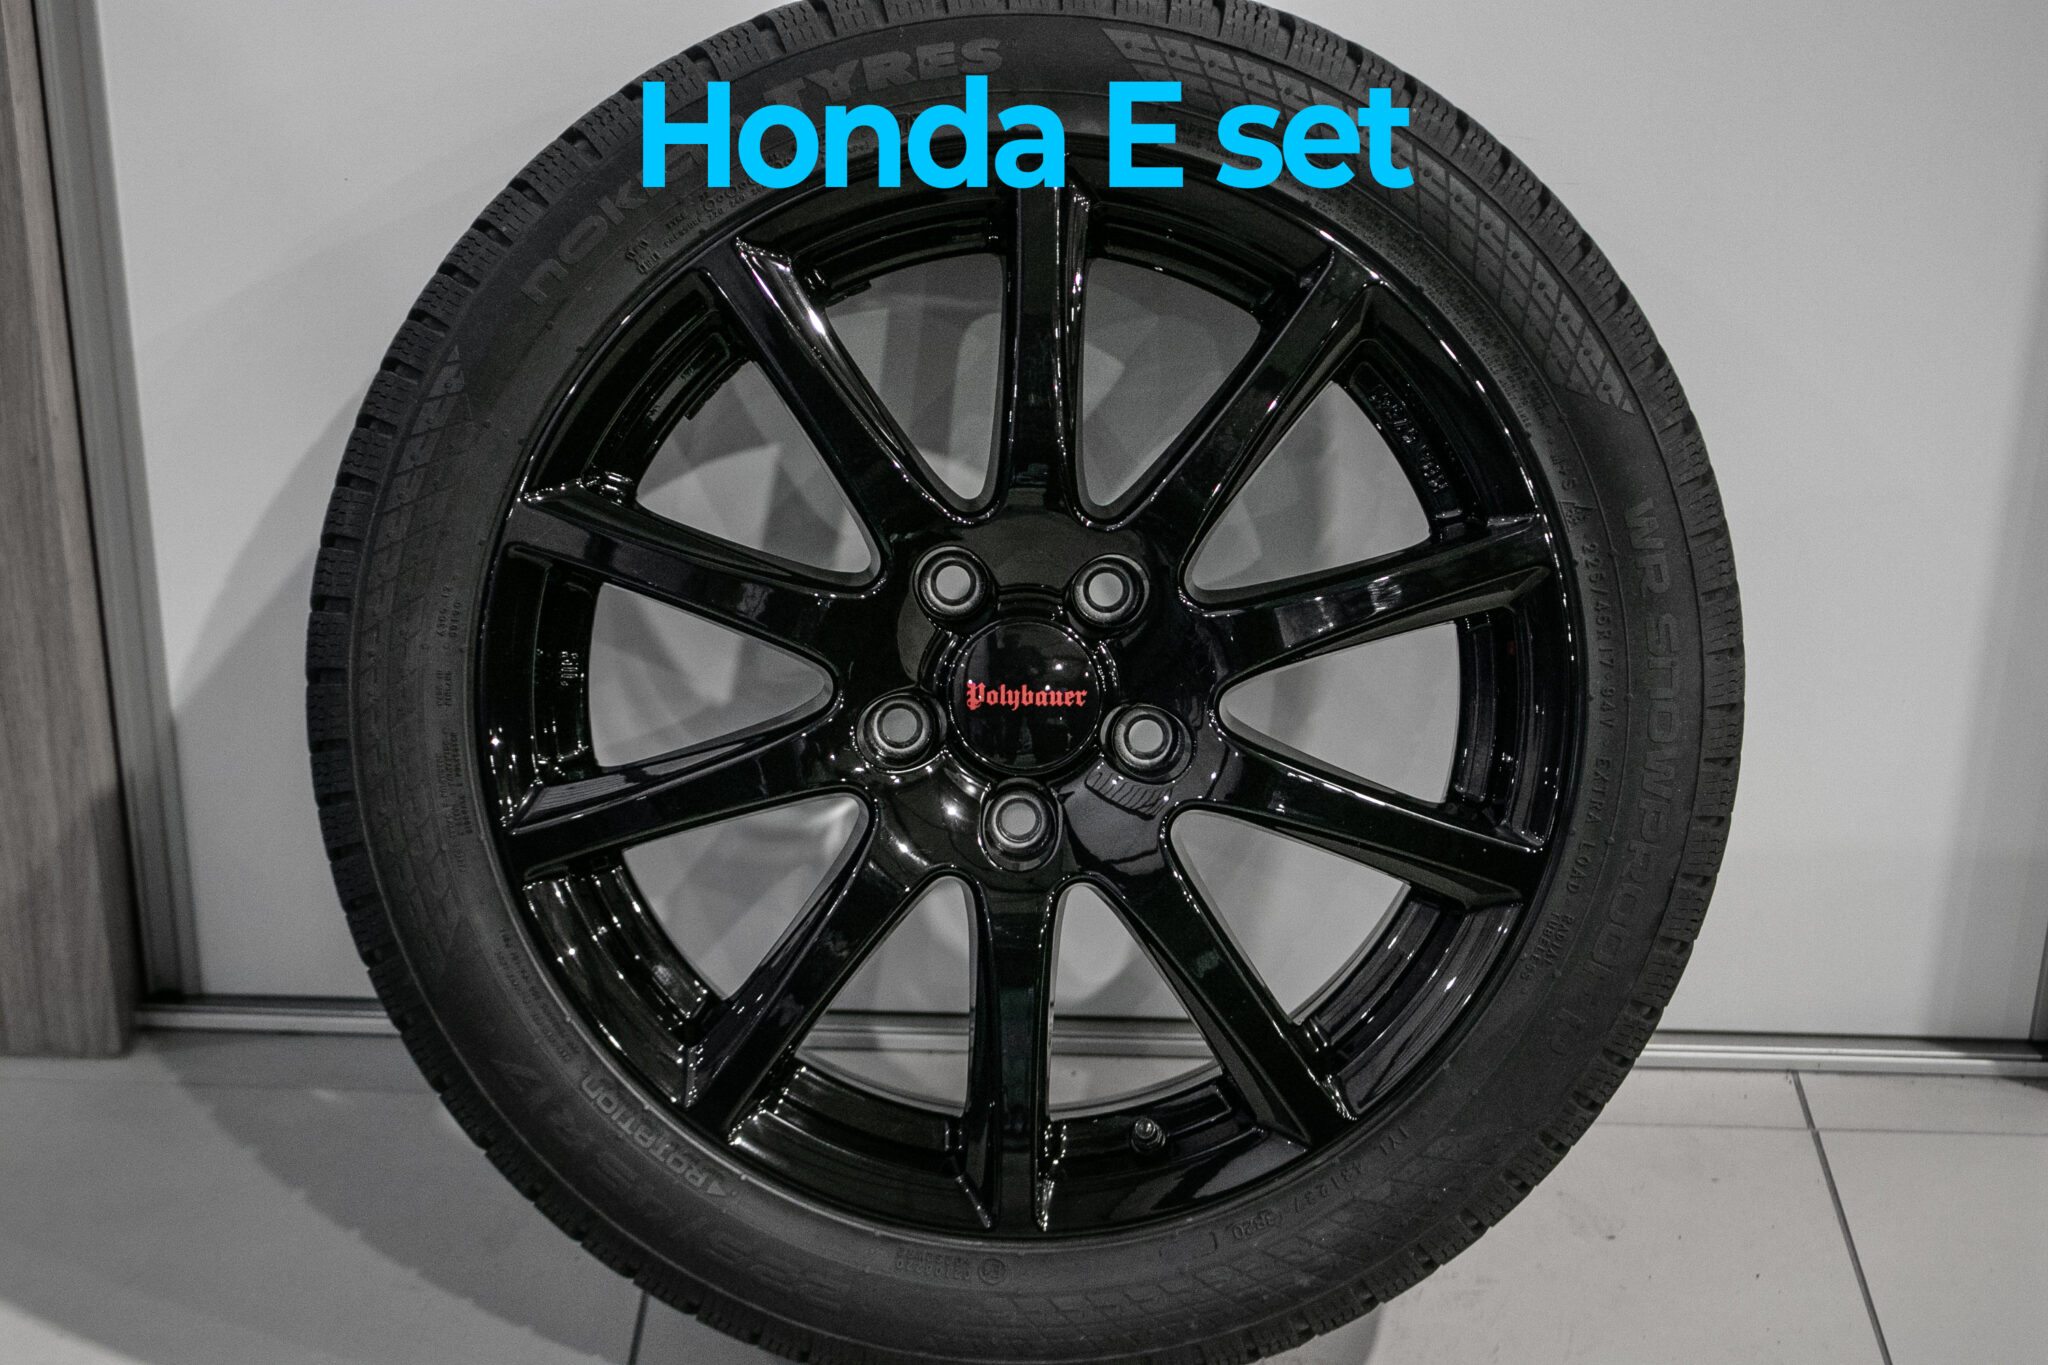 17" Winterwielen voor de Honda e.
gebruikt
€995,-
Profielen 7.5mm - 8mm
